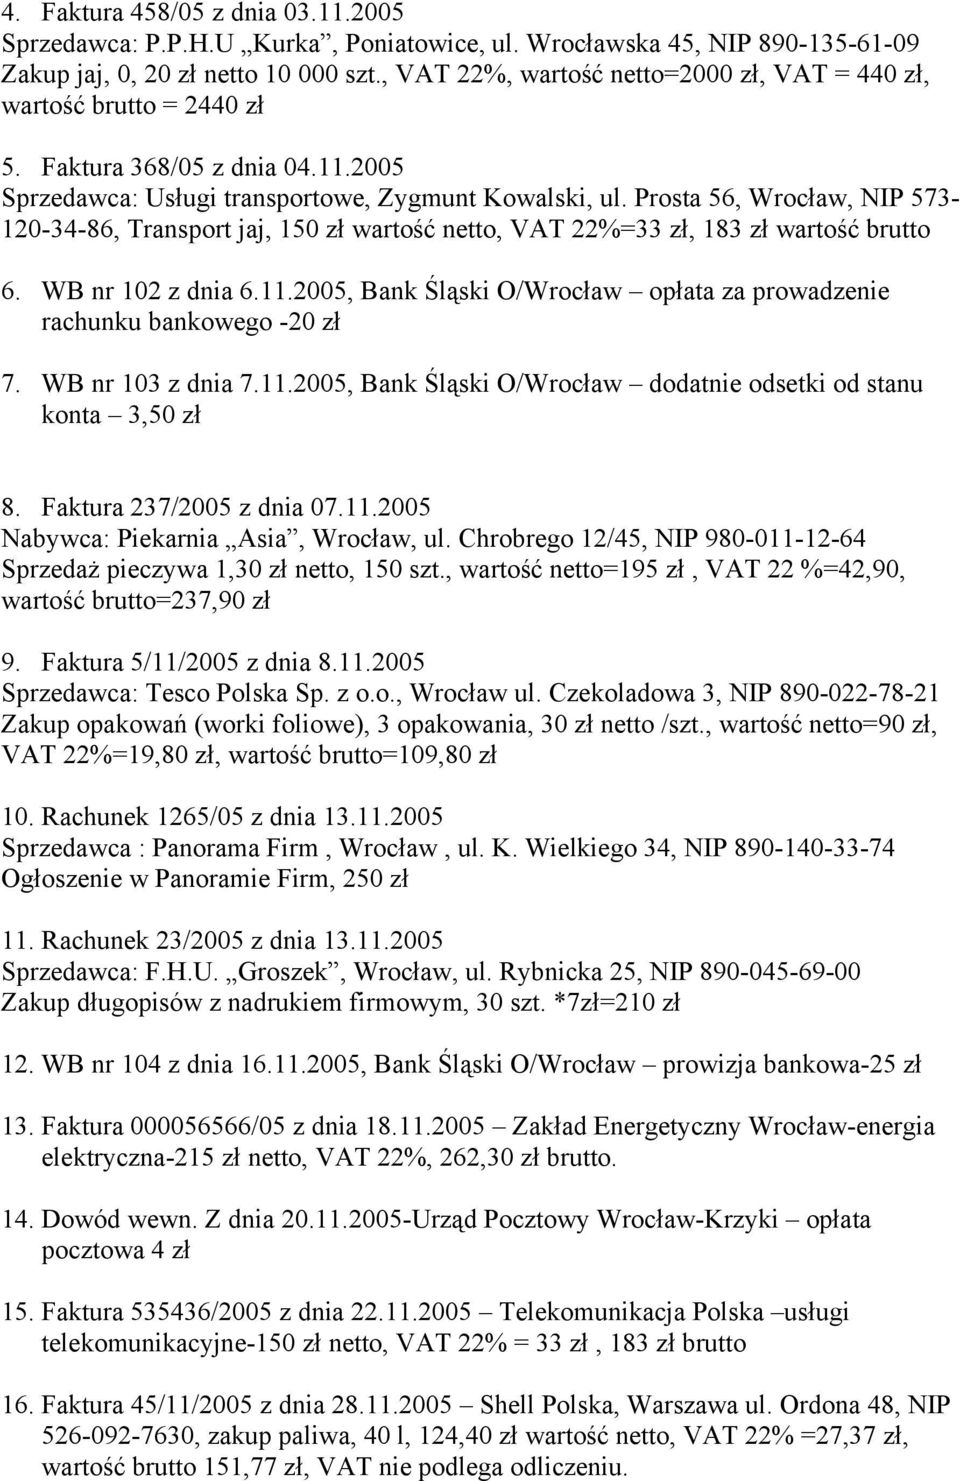 Prosta 56, Wrocław, NIP 573-120-34-86, Transport jaj, 150 zł wartość netto, VAT 22%=33 zł, 183 zł wartość brutto 6. WB nr 102 z dnia 6.11.